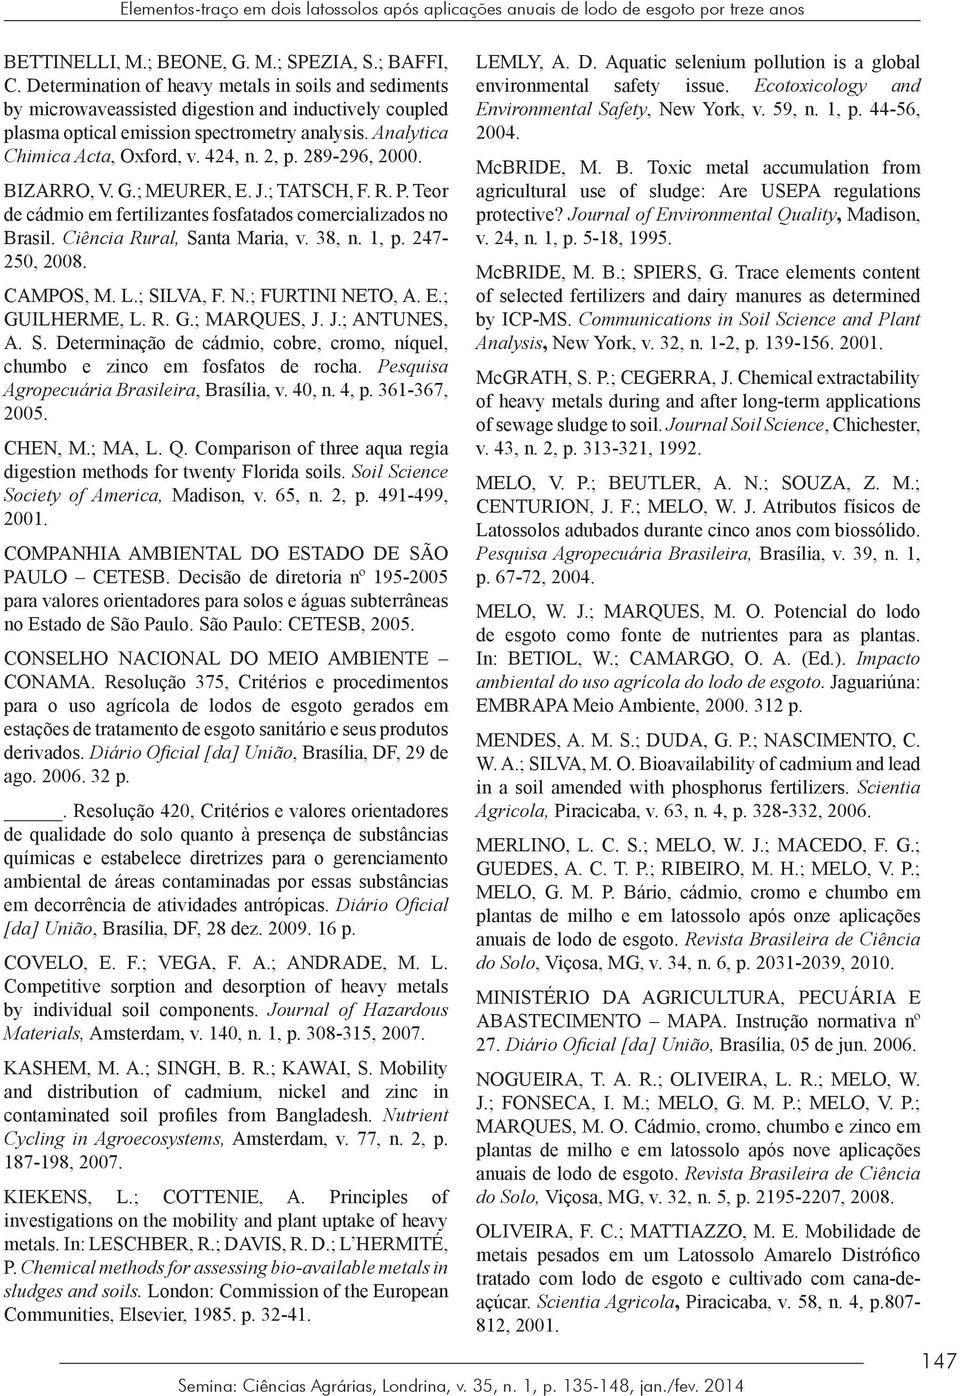 2, p. 289296, 2000. BIZARRO, V. G.; MEURER, E. J.; TATSCH, F. R. P. Teor de cádmio em fertilizantes fosfatados comercializados no Brasil. Ciência Rural, Santa Maria, v. 38, n. 1, p. 247 250, 2008.